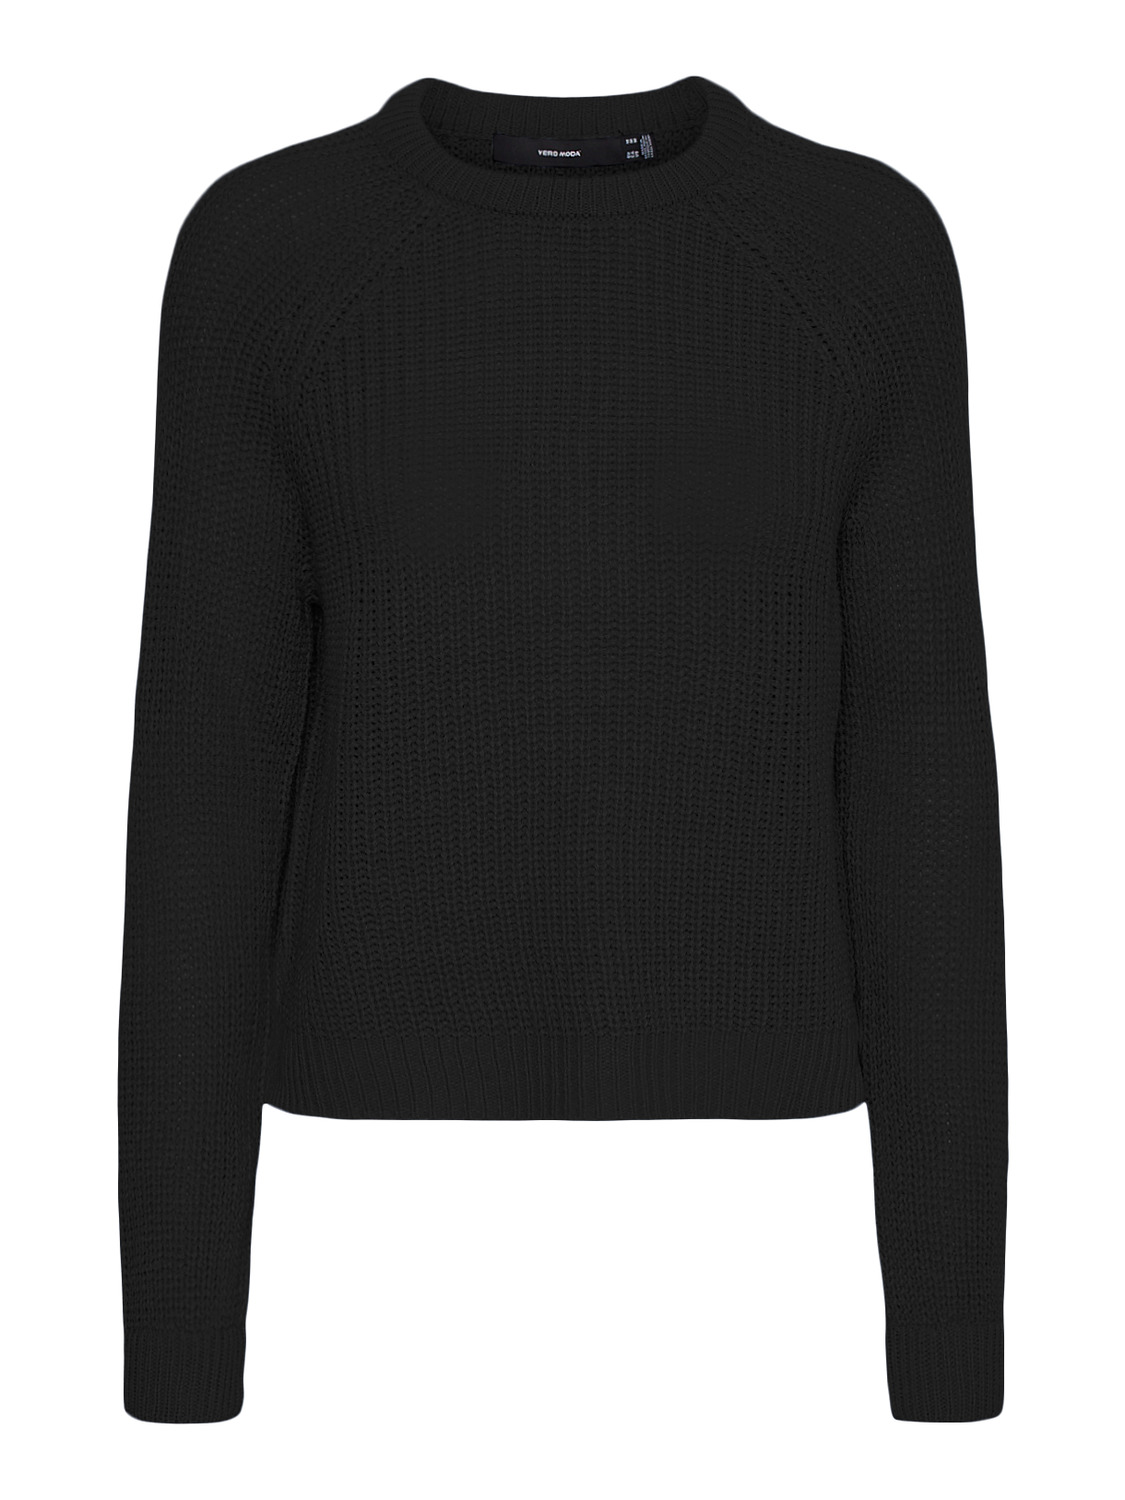 Odzież Swetry & dzianina VERO MODA Sweter w kolorze Czarnym 